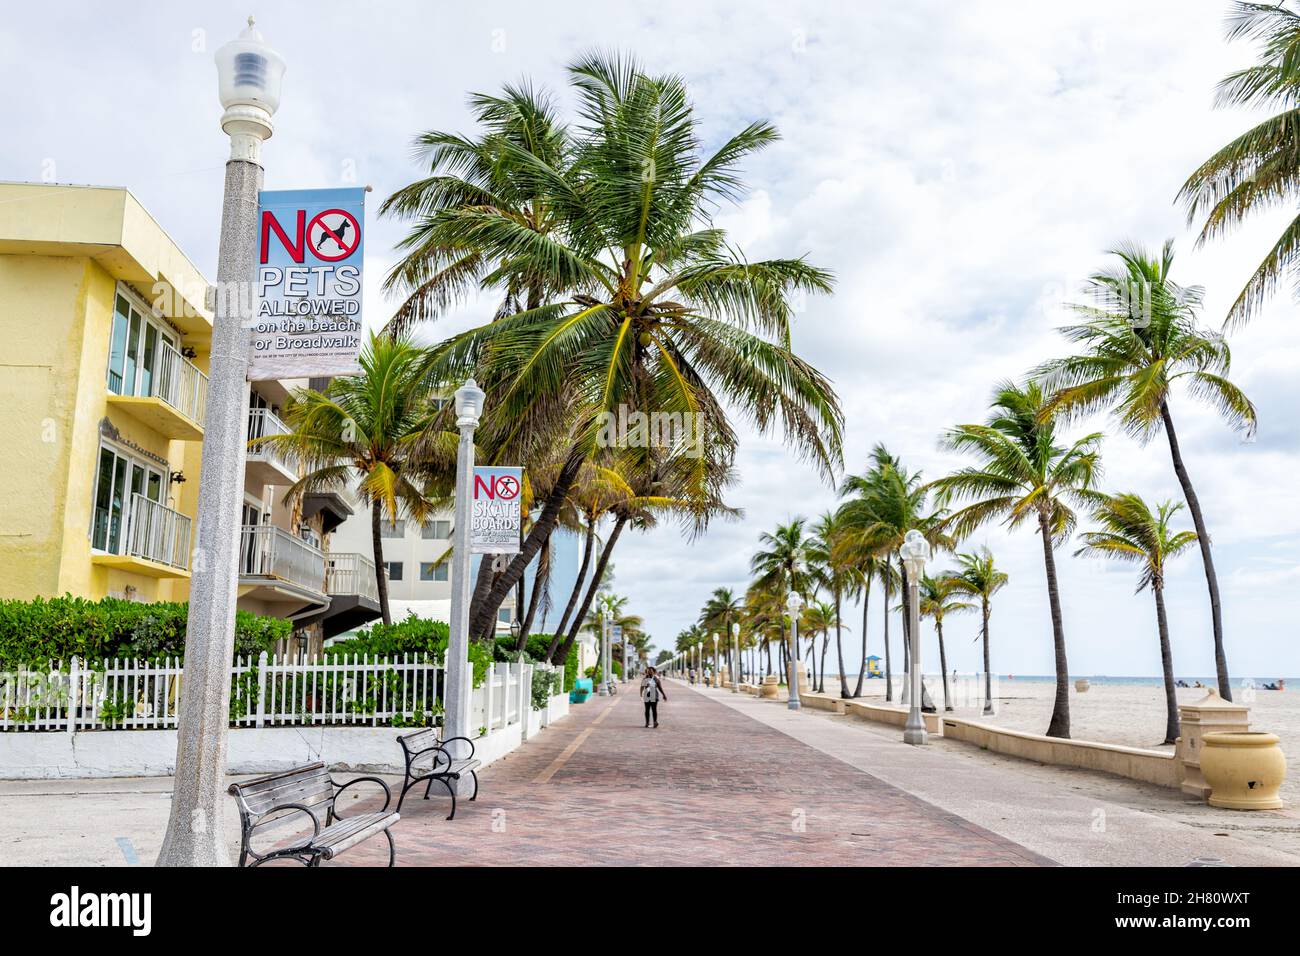 Hollywood, États-Unis - 4 août 2021 : au nord de Miami Beach, promenade Hollywood broadwalk en Floride et panneau pour les animaux de compagnie interdits, les planches à roulettes et le palmier tr Banque D'Images